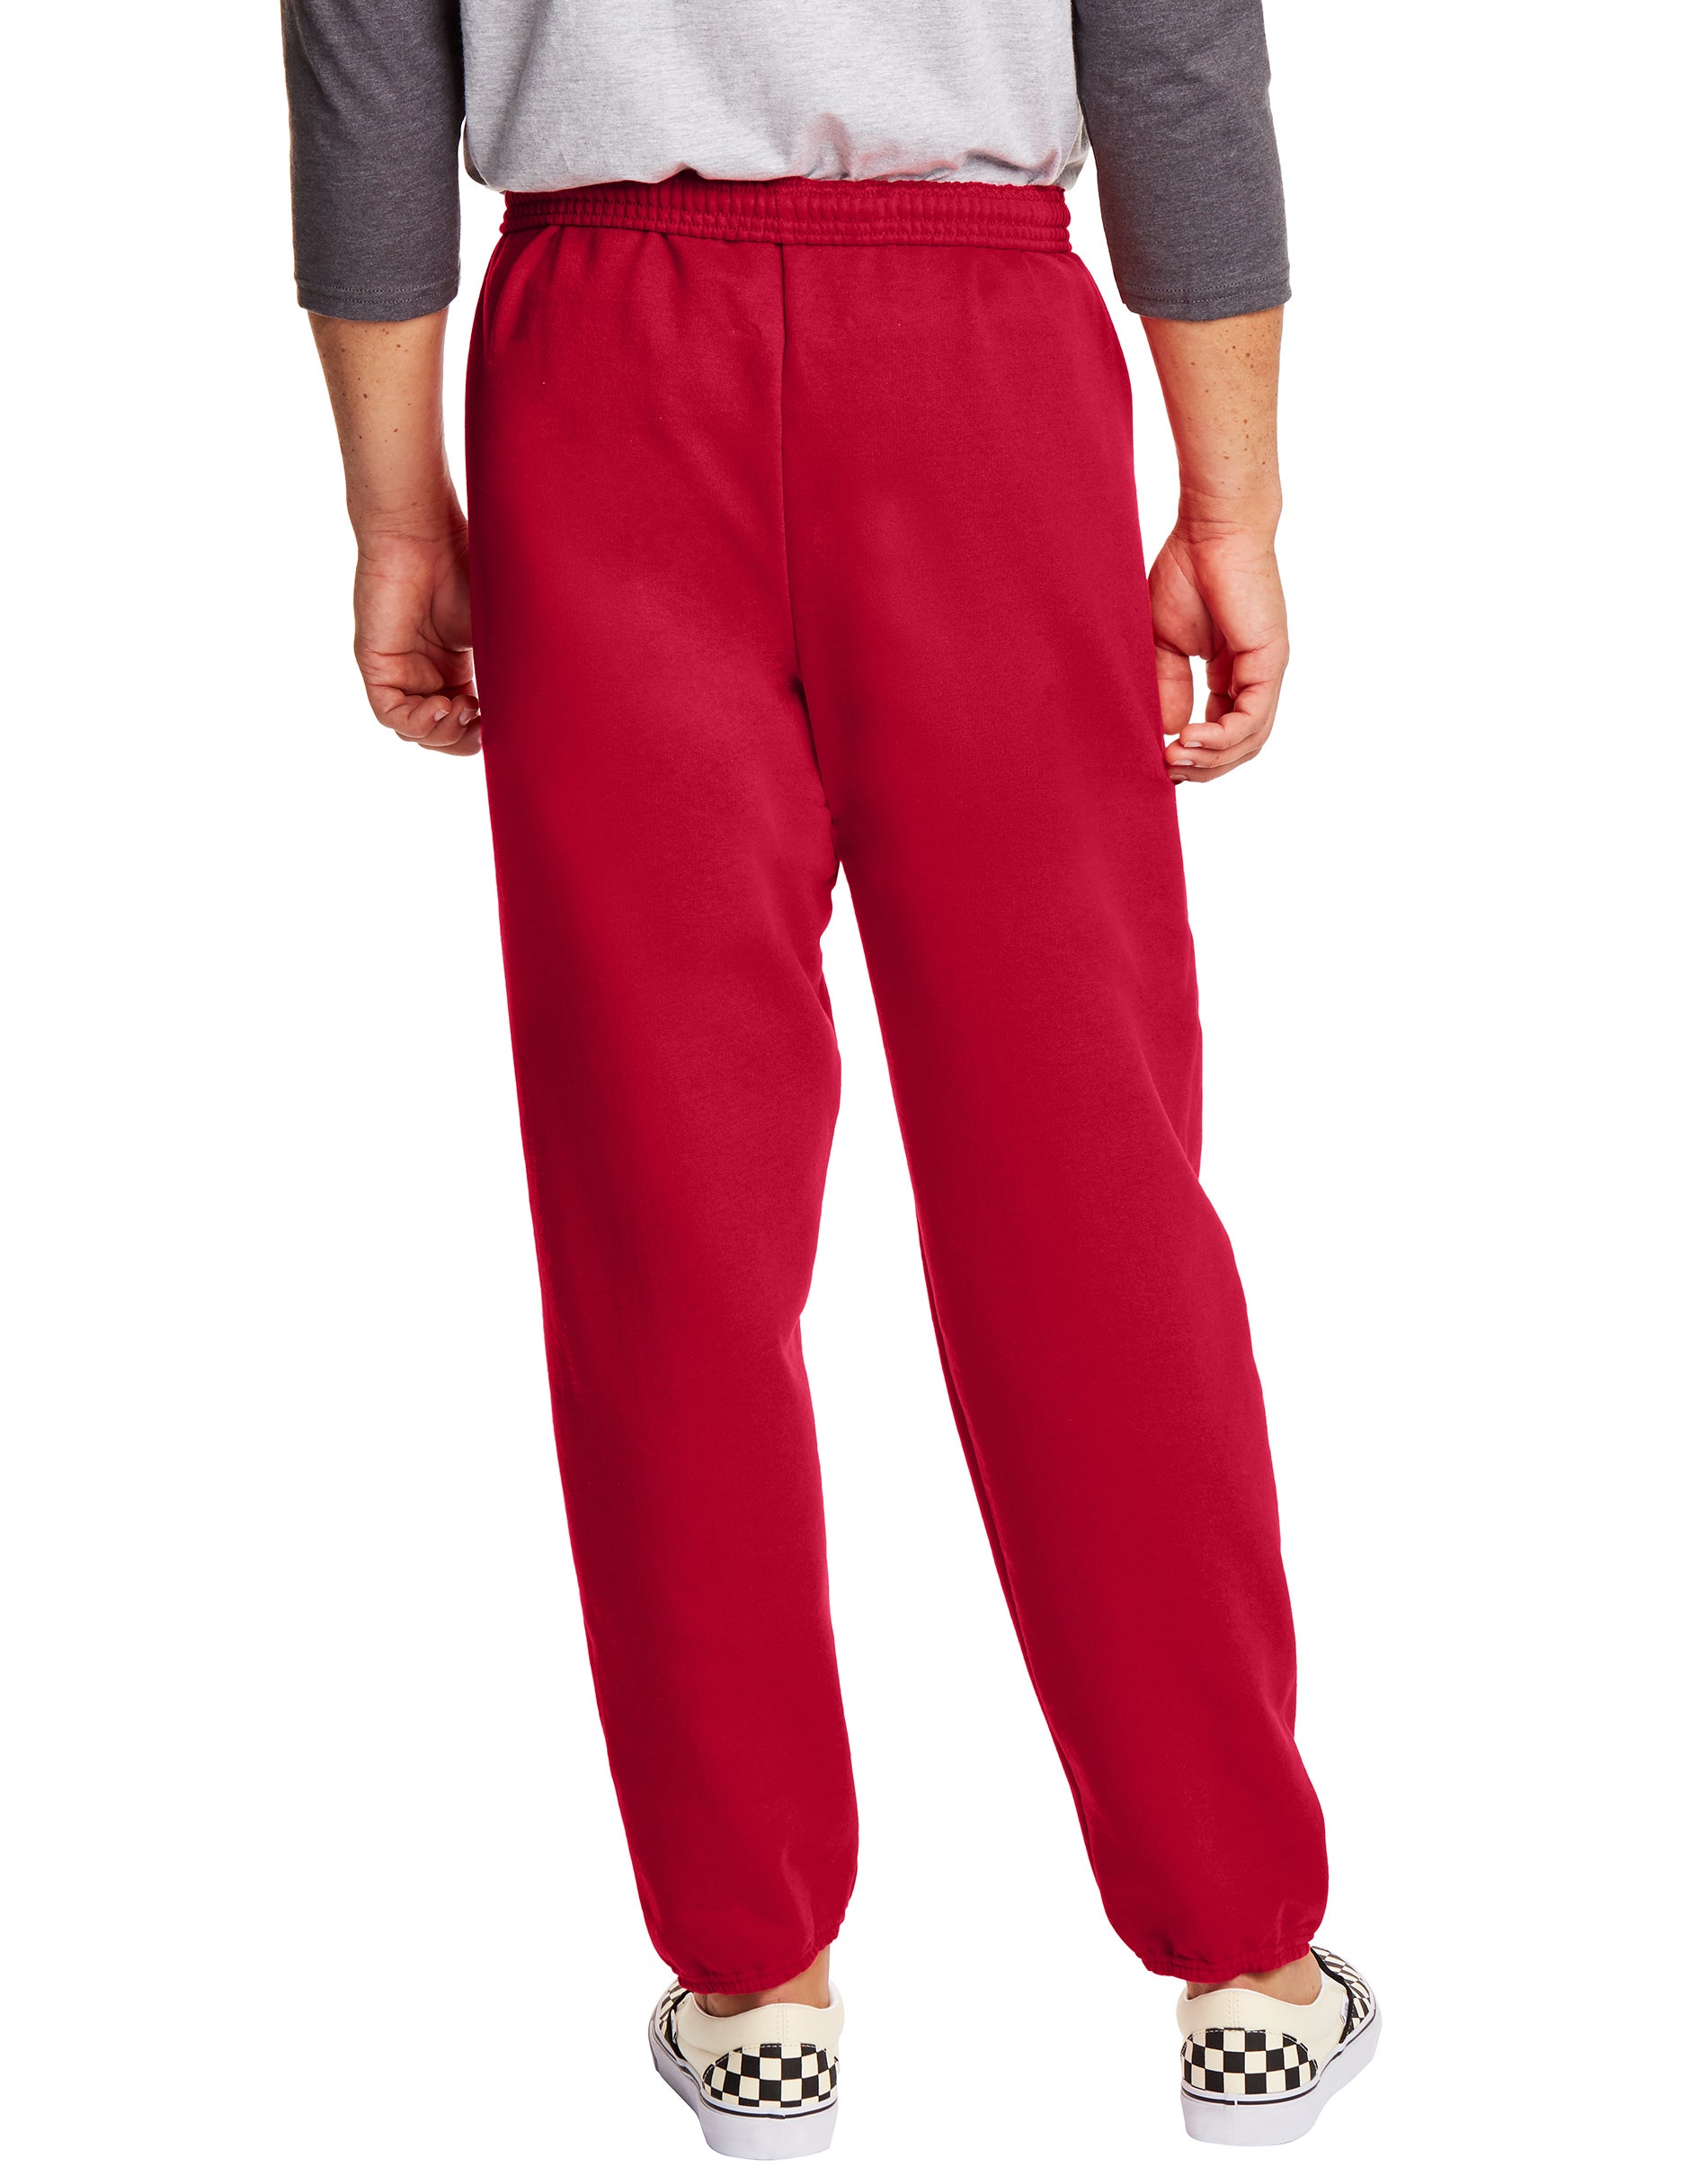 Hanes EcoSmart Men's Fleece Sweatpants, 2-Pack, 32" Deep Red M - image 3 of 4